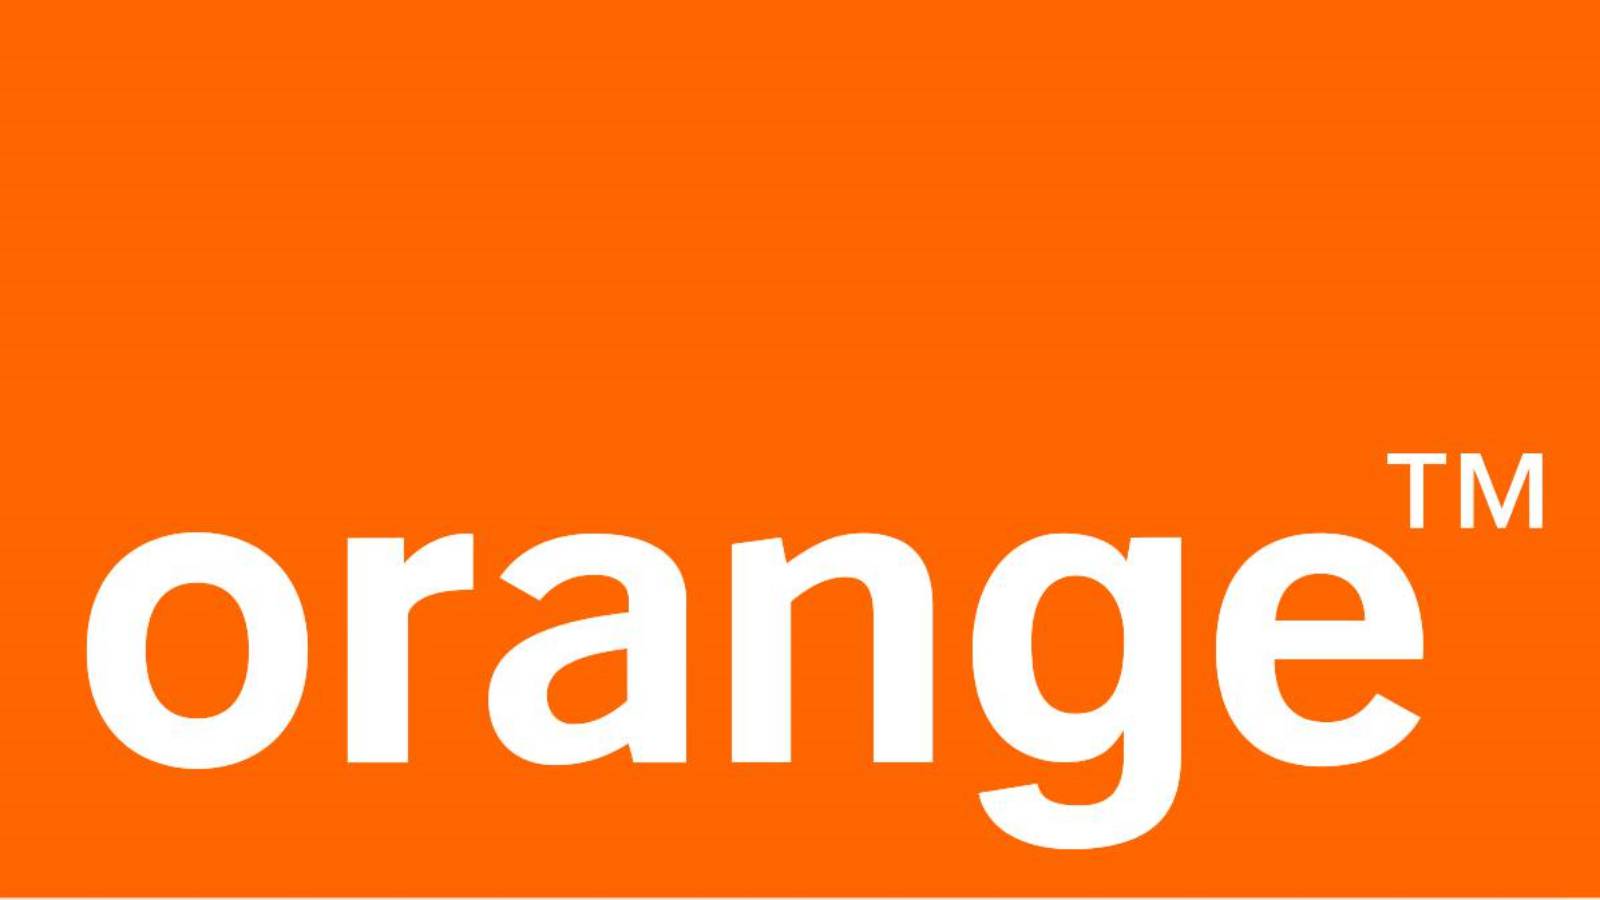 Orange Vestile OficialeGRATUIT MILIOANE Romani Tara